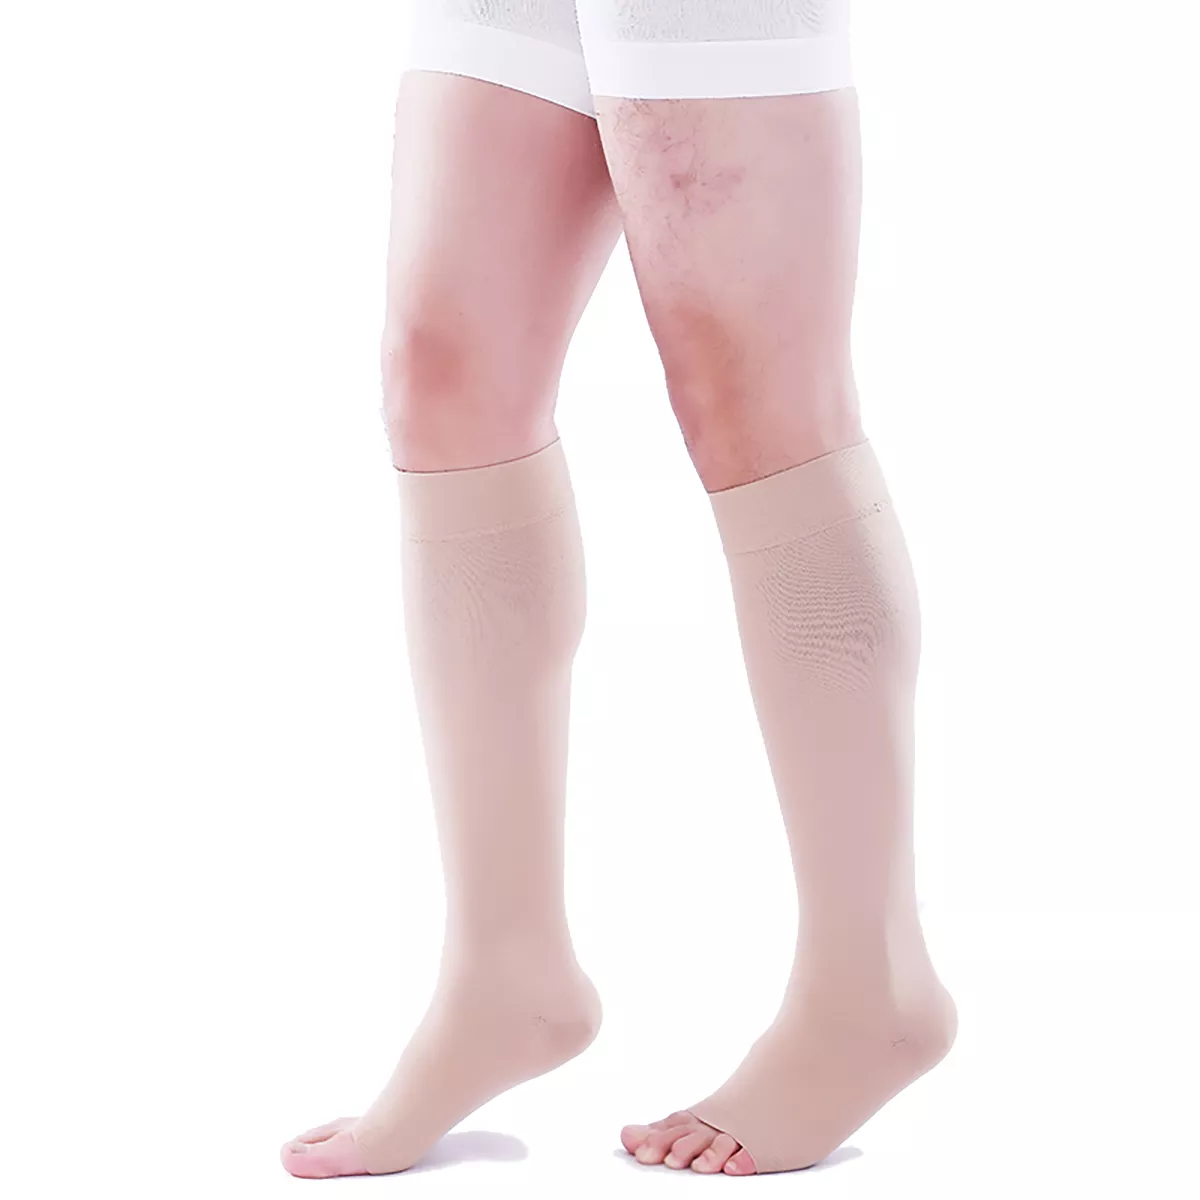 Varcoh ® 20-30 mmHg Men Knee High Open Toe Compression Socks Beige